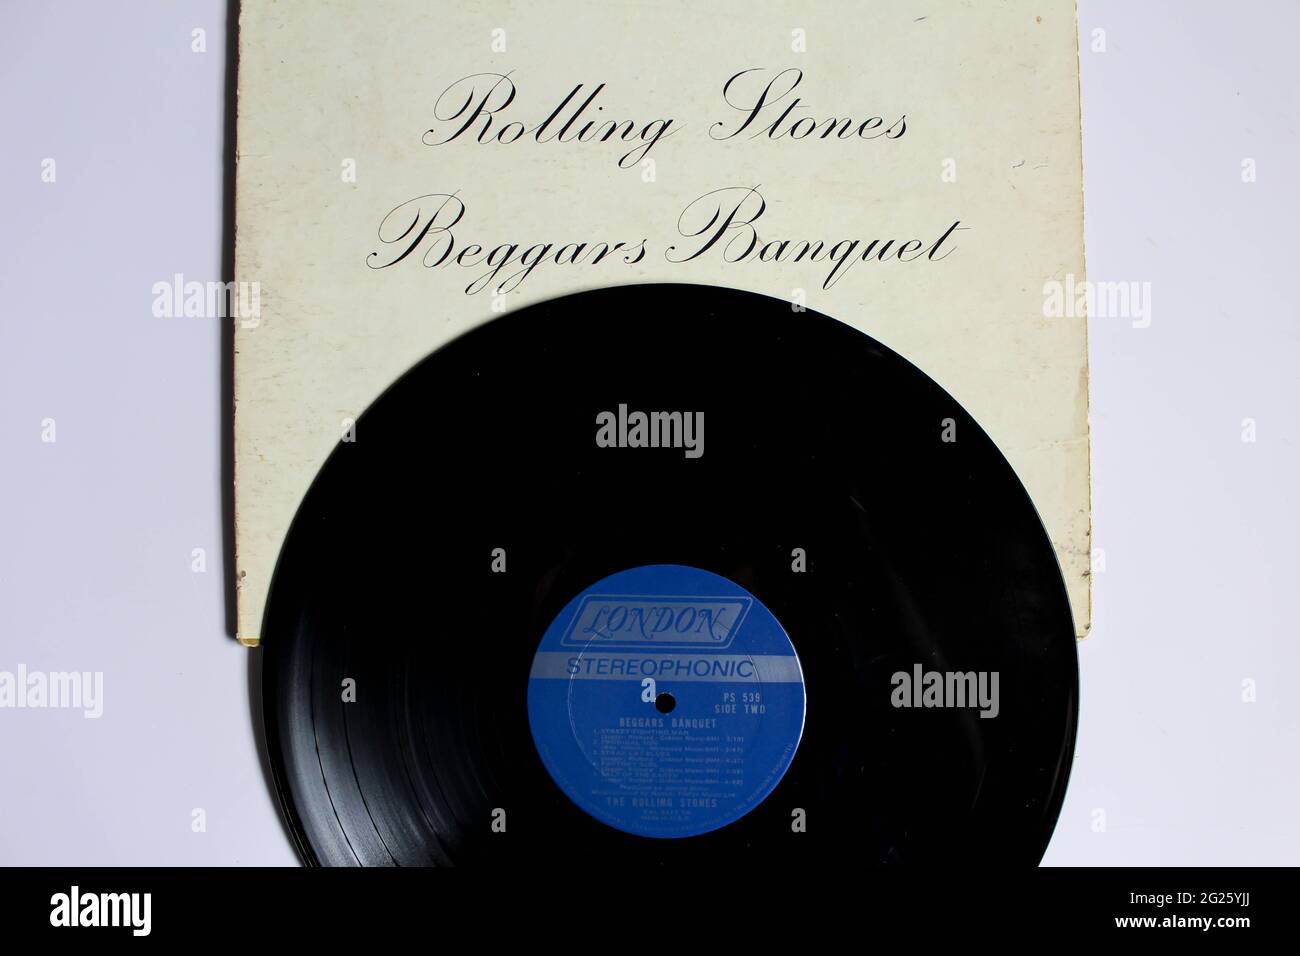 Rock band inglese, l'album musicale Rolling Stones su disco LP con dischi in vinile. Titolo: Copertina dell'album Beggars Banquet Foto Stock